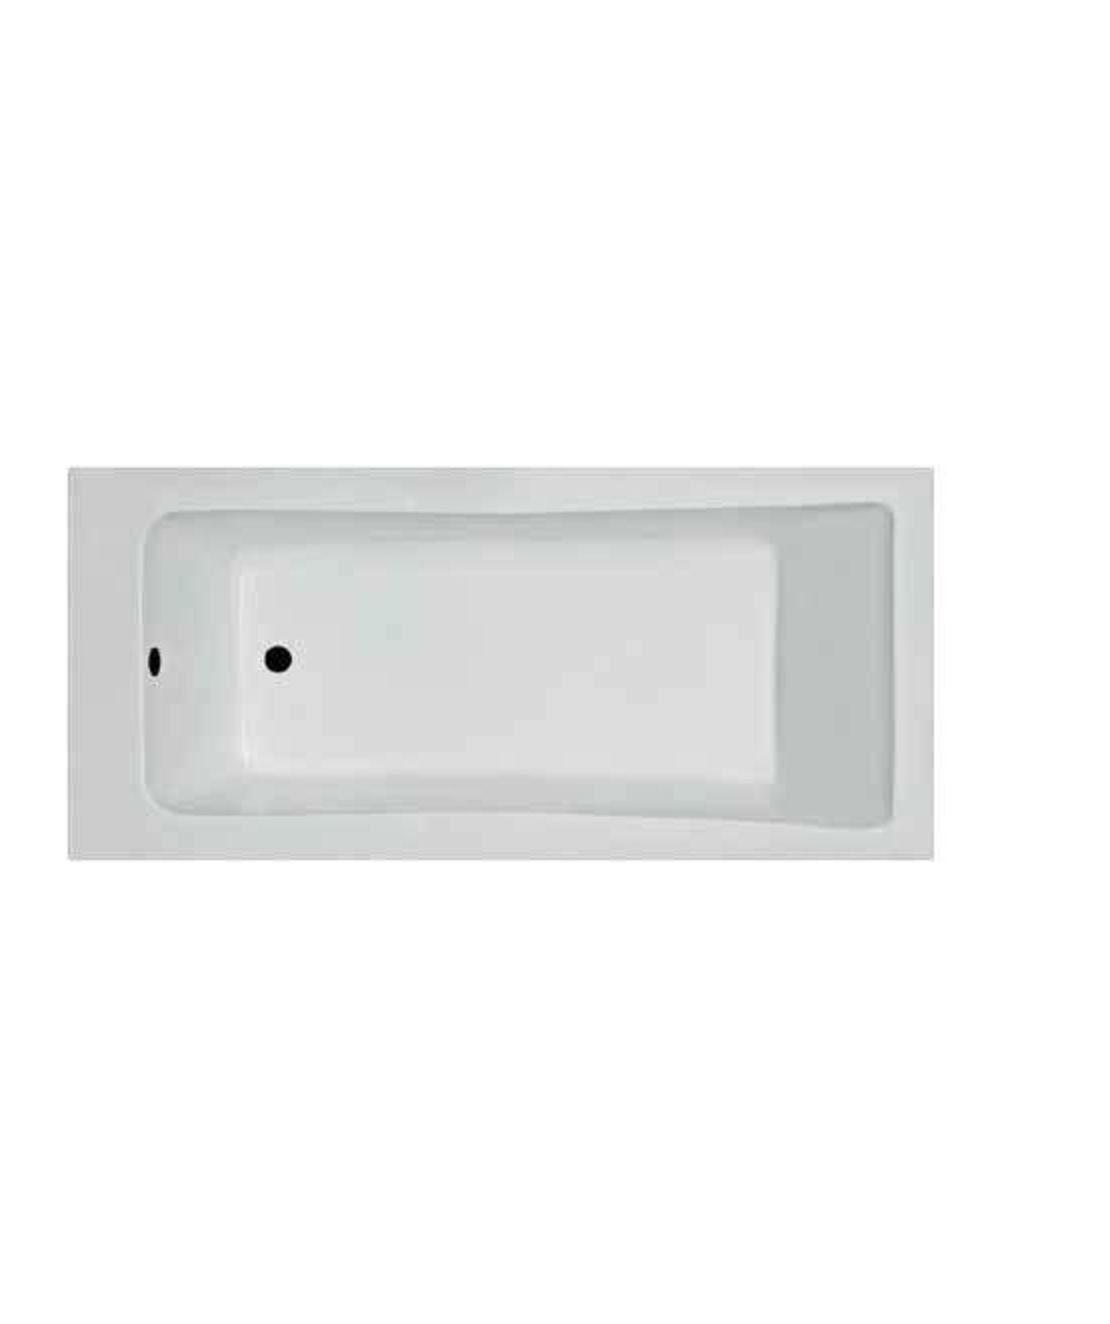 ע- אמבטיה אקרילית לבנה 150 * 70 דגם אוריון פרופילון PR468050